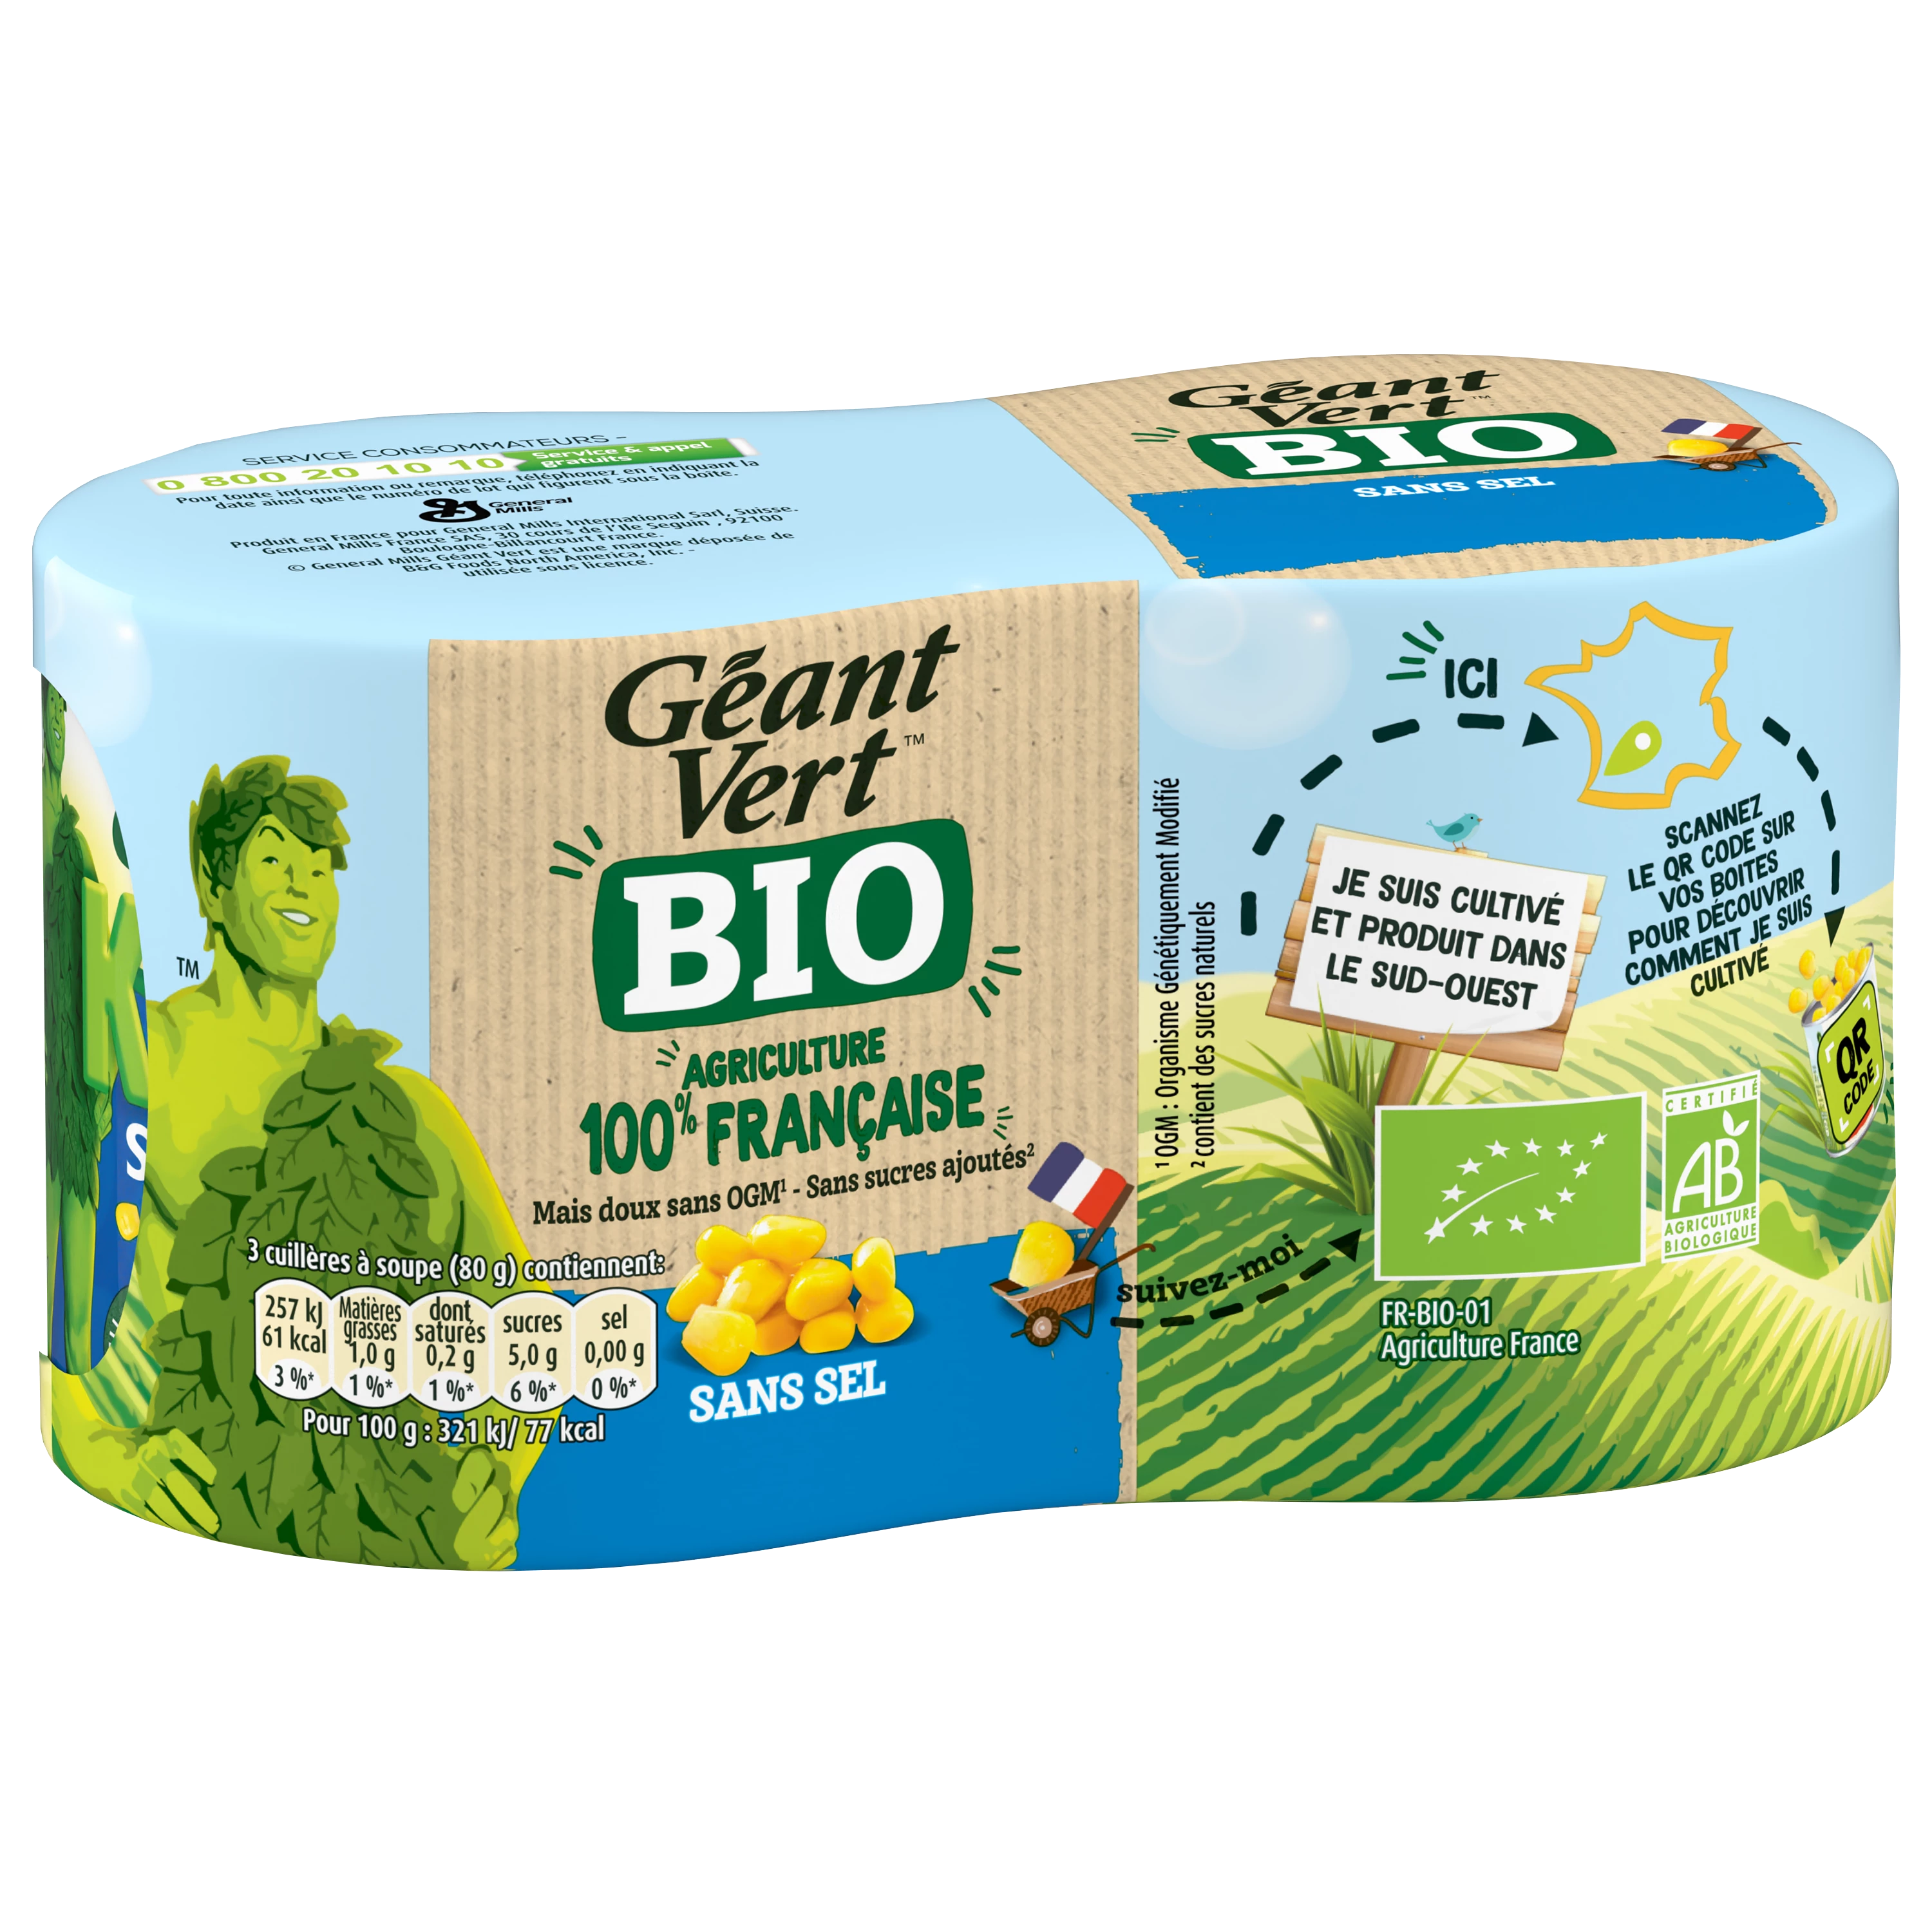 Giant Green Corn Organic S Selx2 28